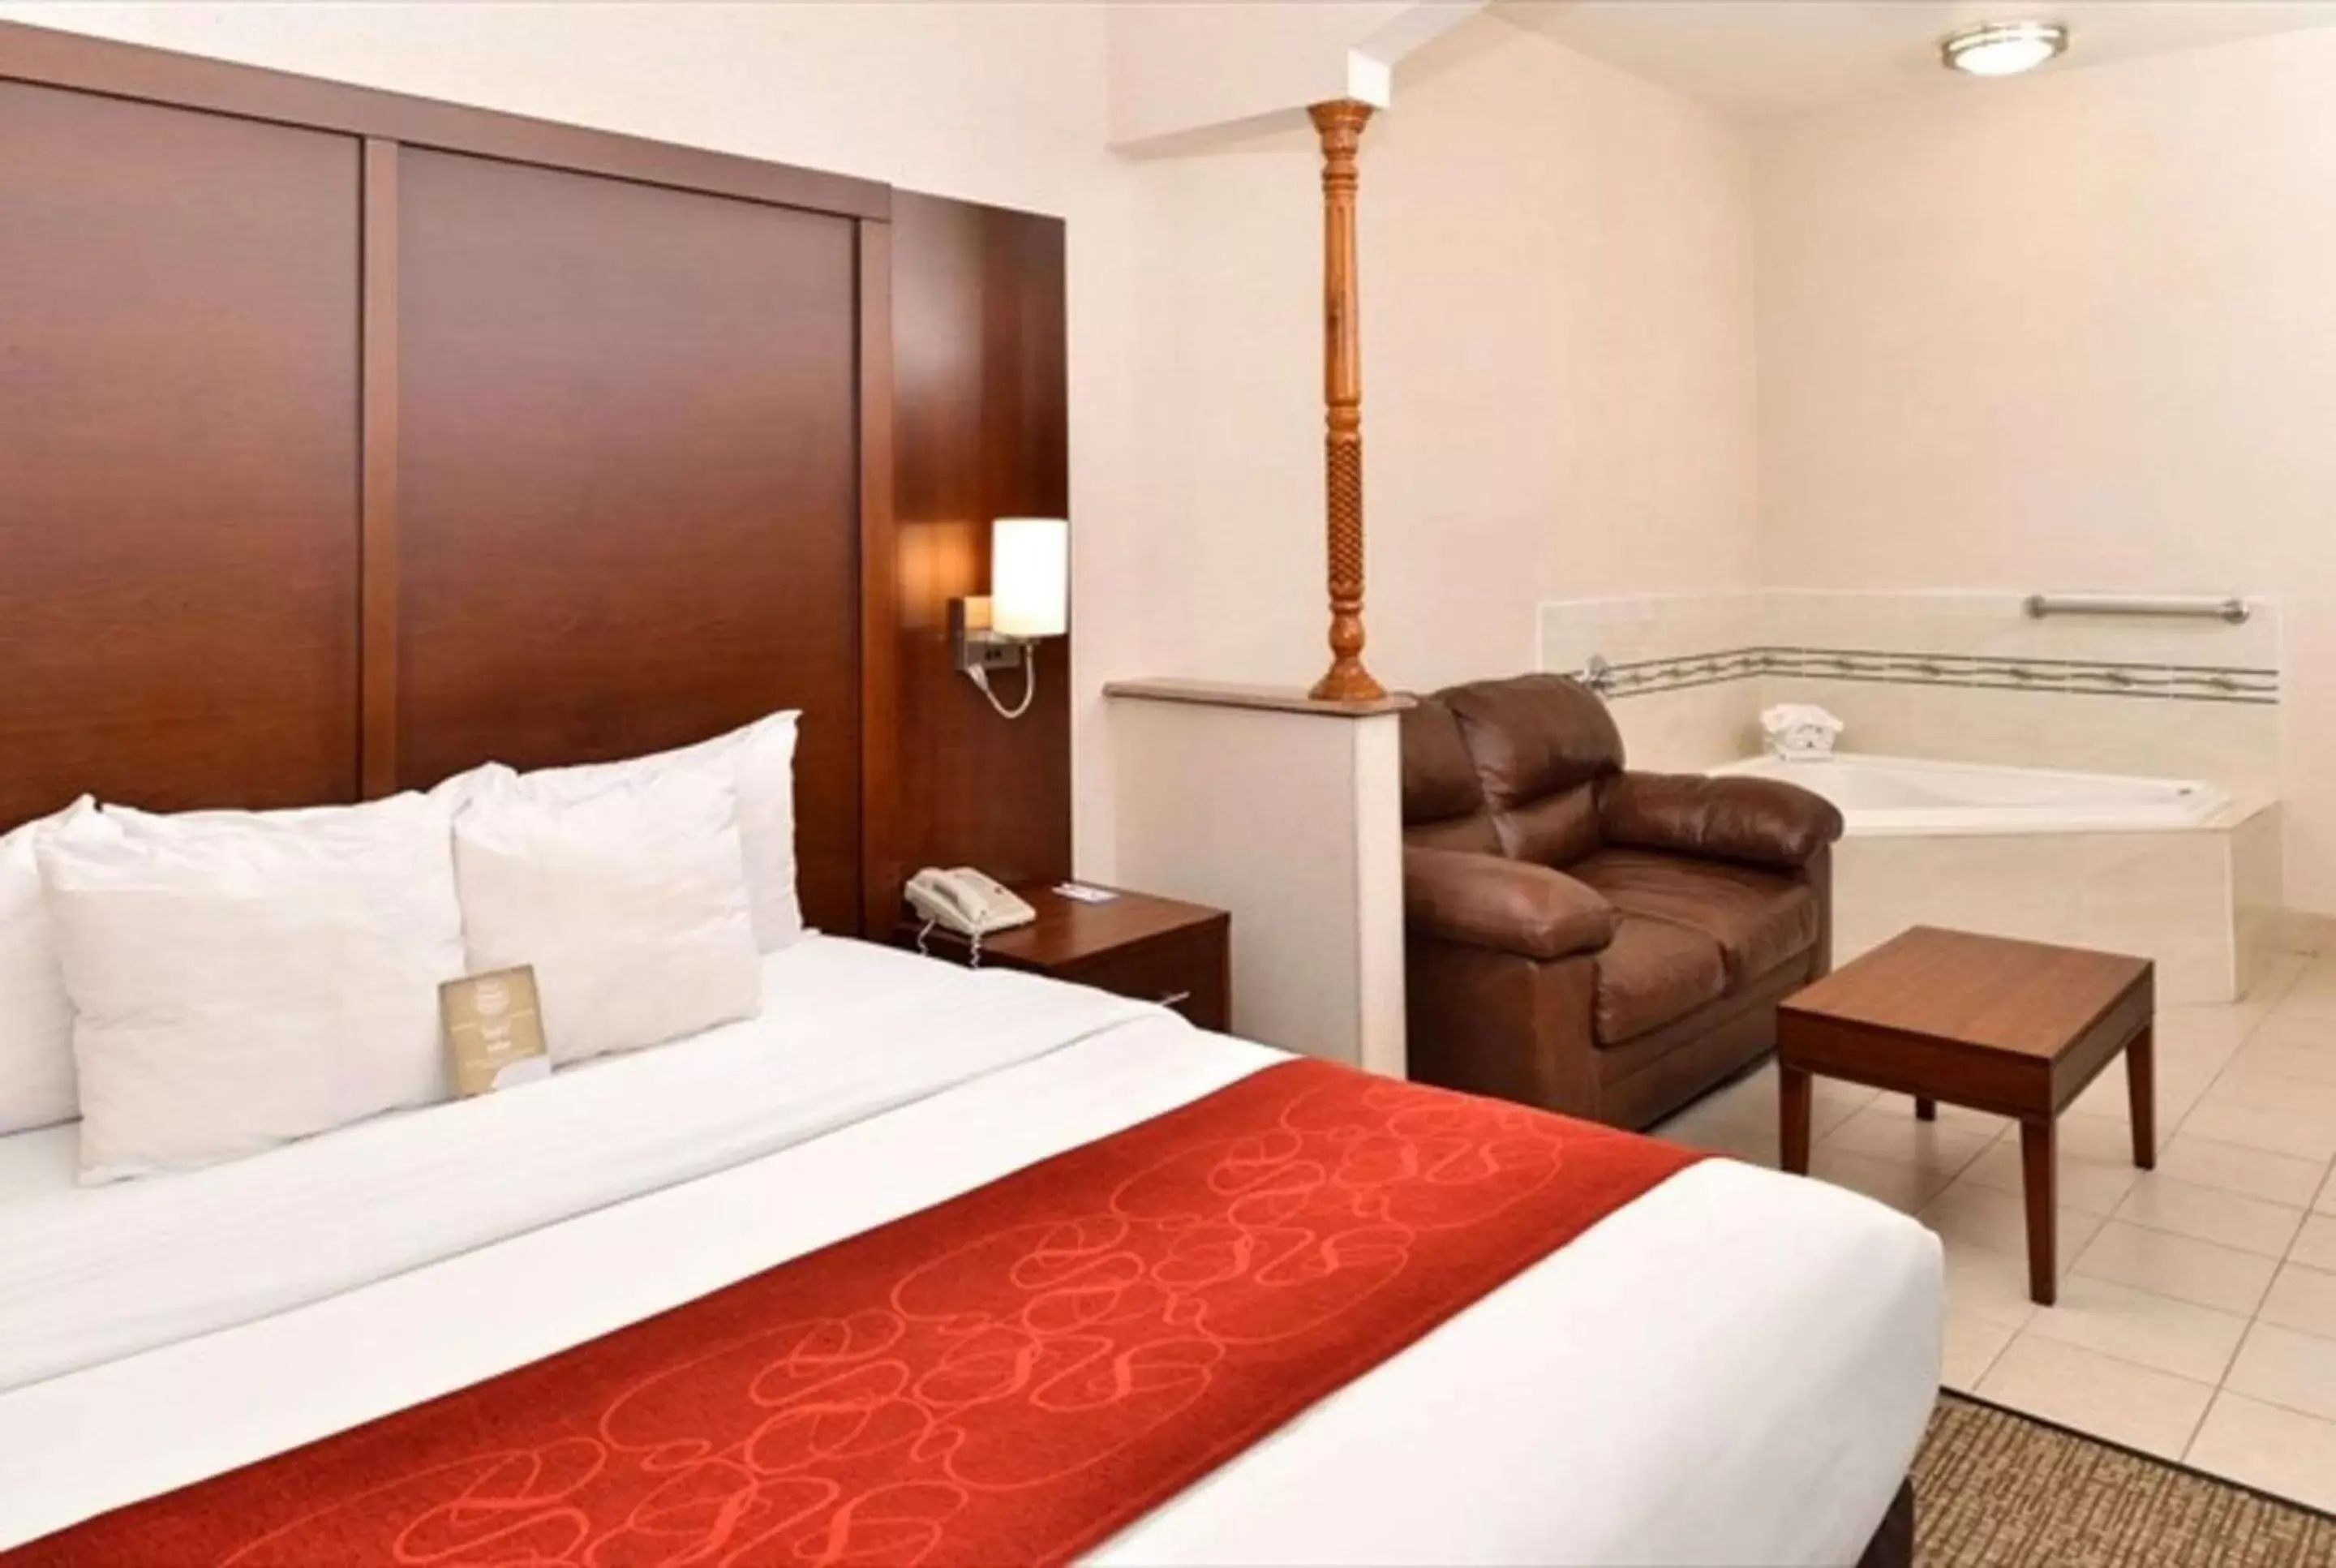 Bed, Room Photo in Comfort Suites Redlands